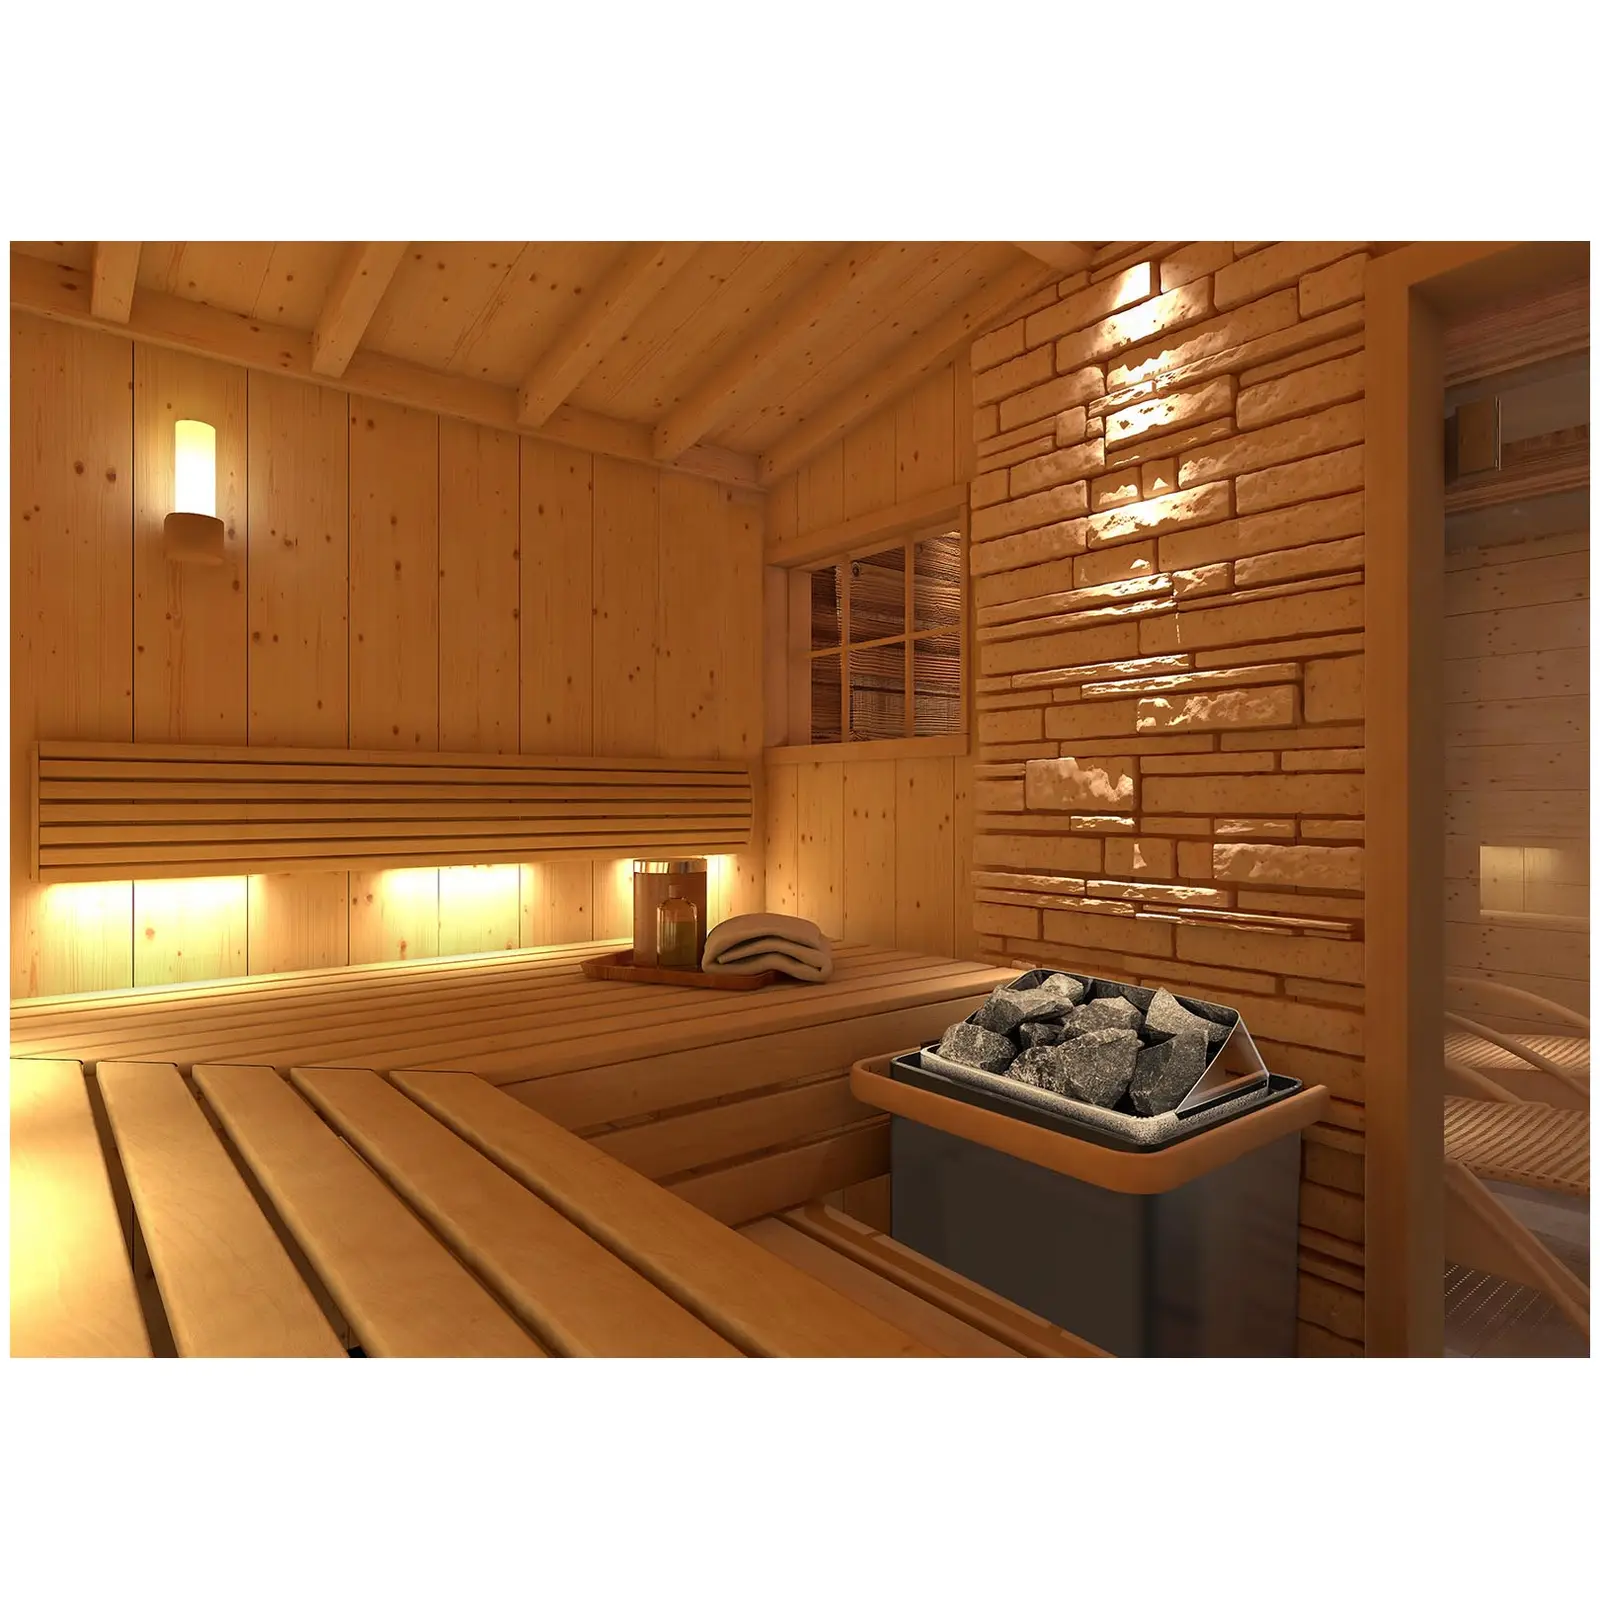 Piec do sauny - elektryczny - 4,5 kW